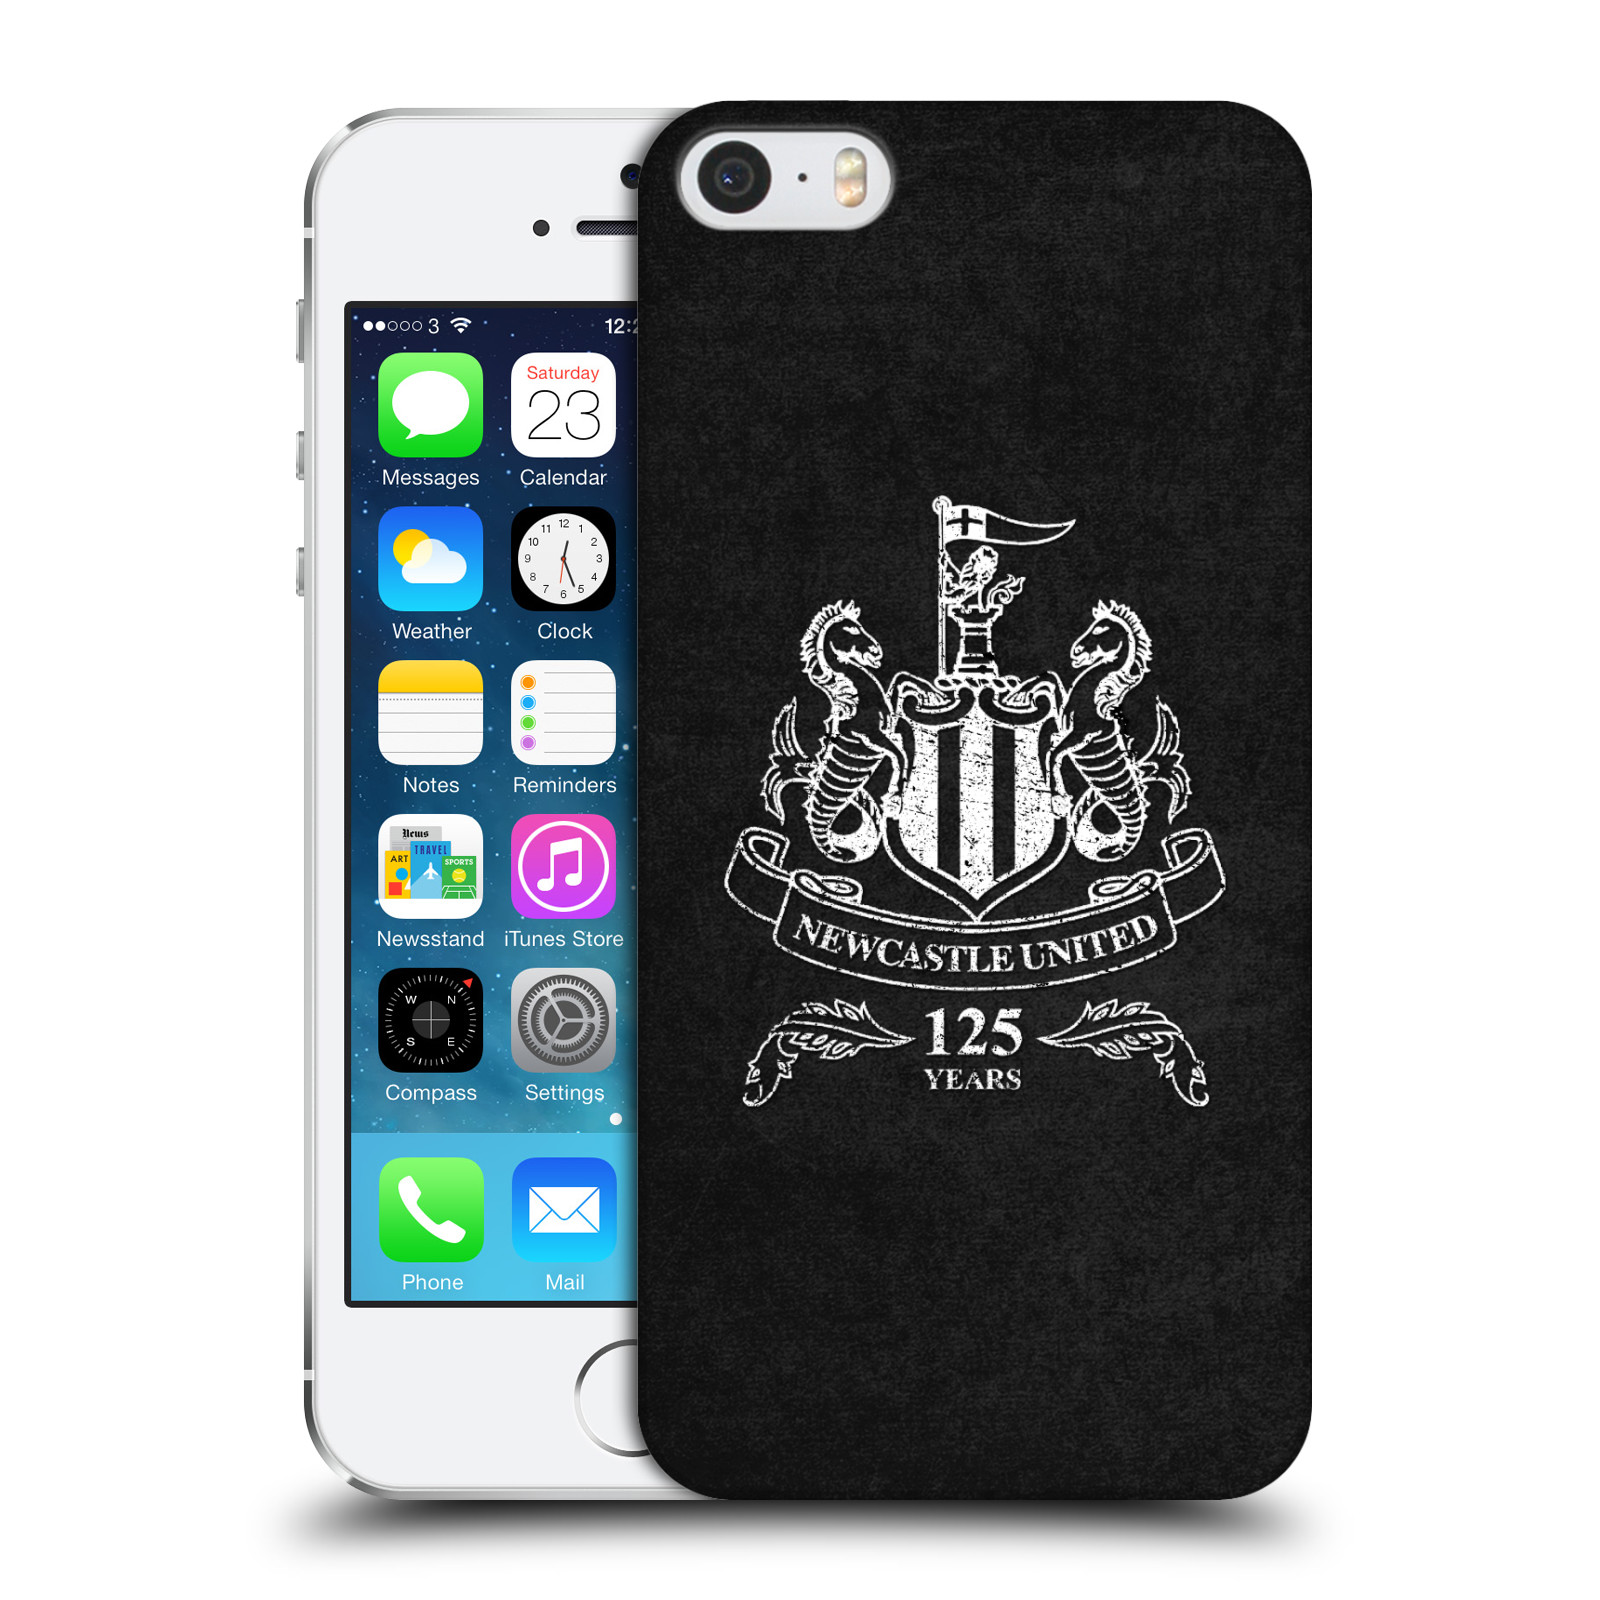 Zadní obal pro mobil Apple Iphone 5/5S/SE 2015 - HEAD CASE - Fotbalové týmy - Newcastle United FC - černá